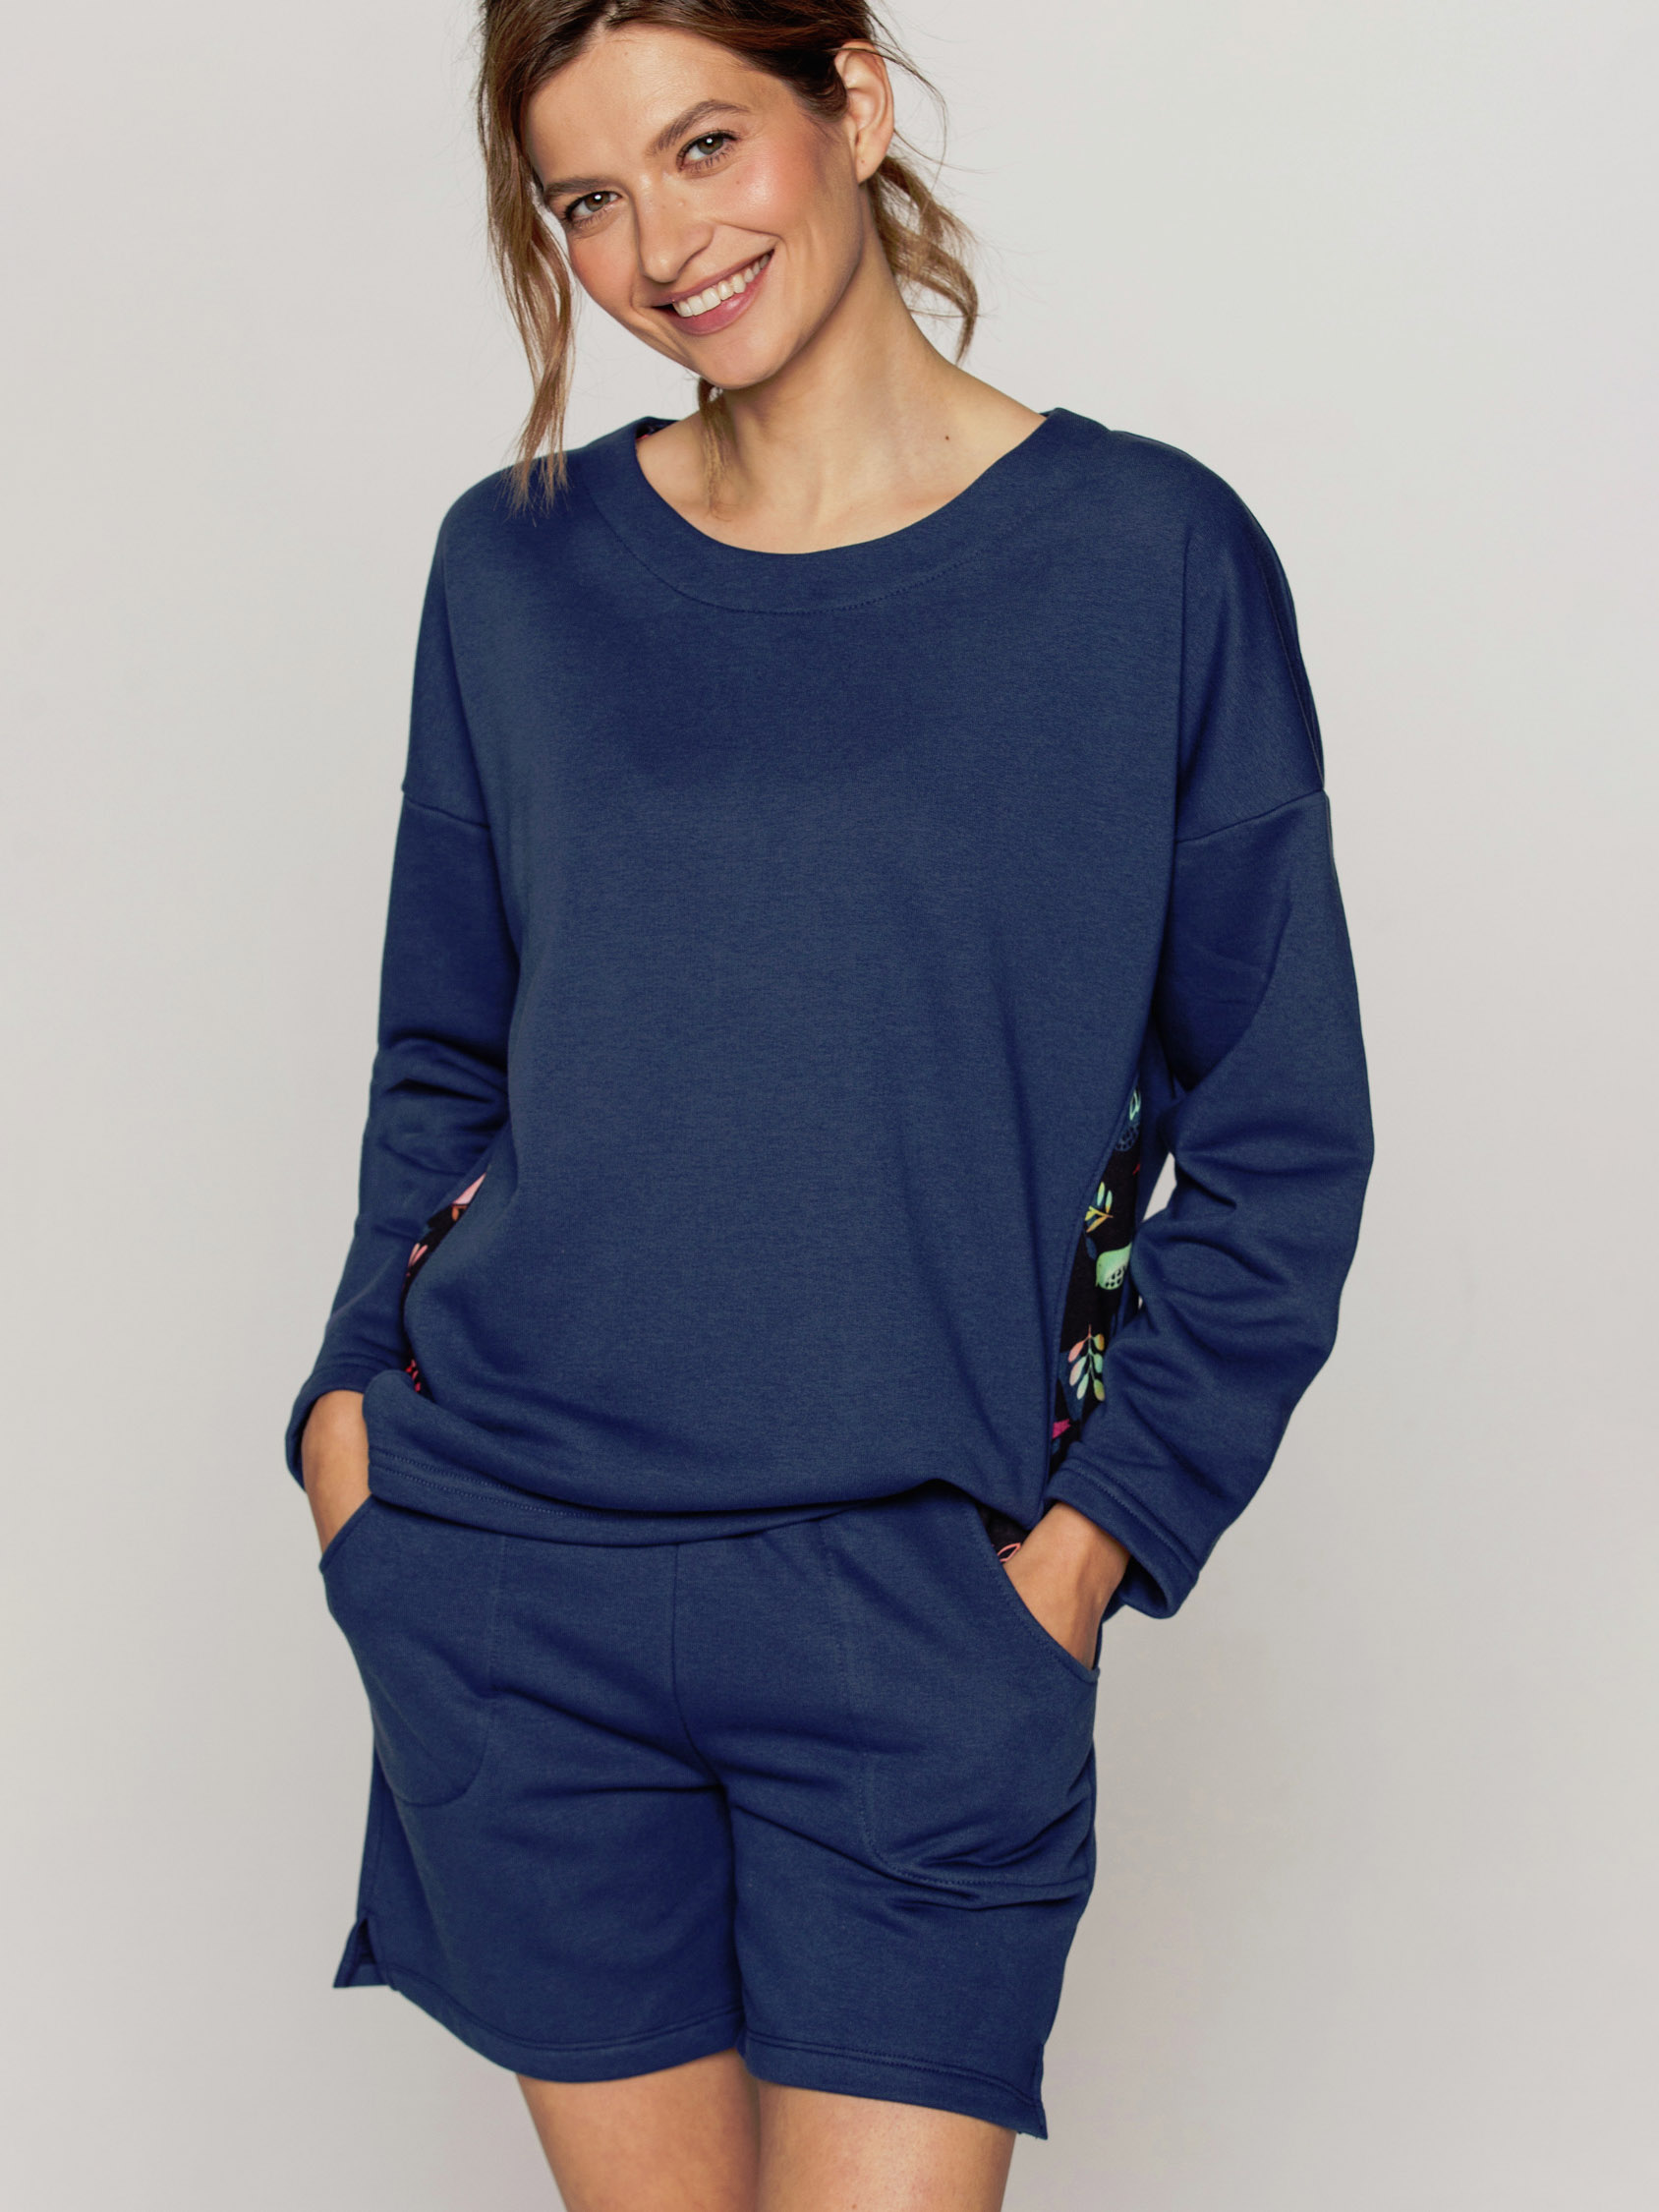 Женская тёплая однотонная хлопковая пижама / домашний комплект с шортами Cana 933 #2